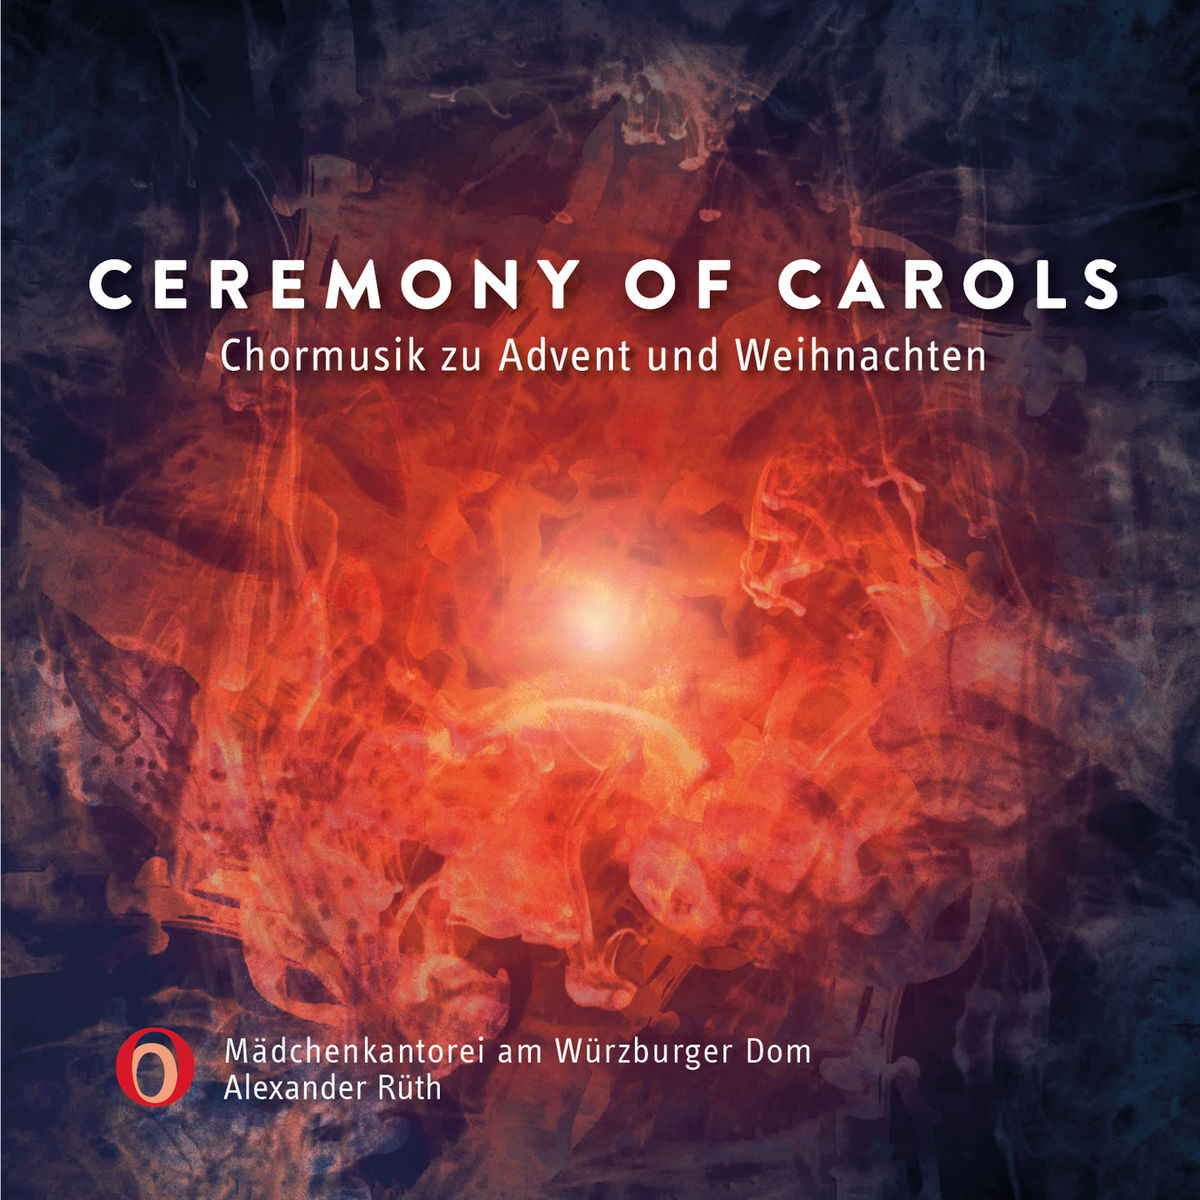 Alexander Ruth & Madchenkantorei am Wurzburger Dom - Ceremony of Carols (Chormusik zu Advent und Weihnachten) (2017) [Qobuz FLAC 24bit/96kHz]